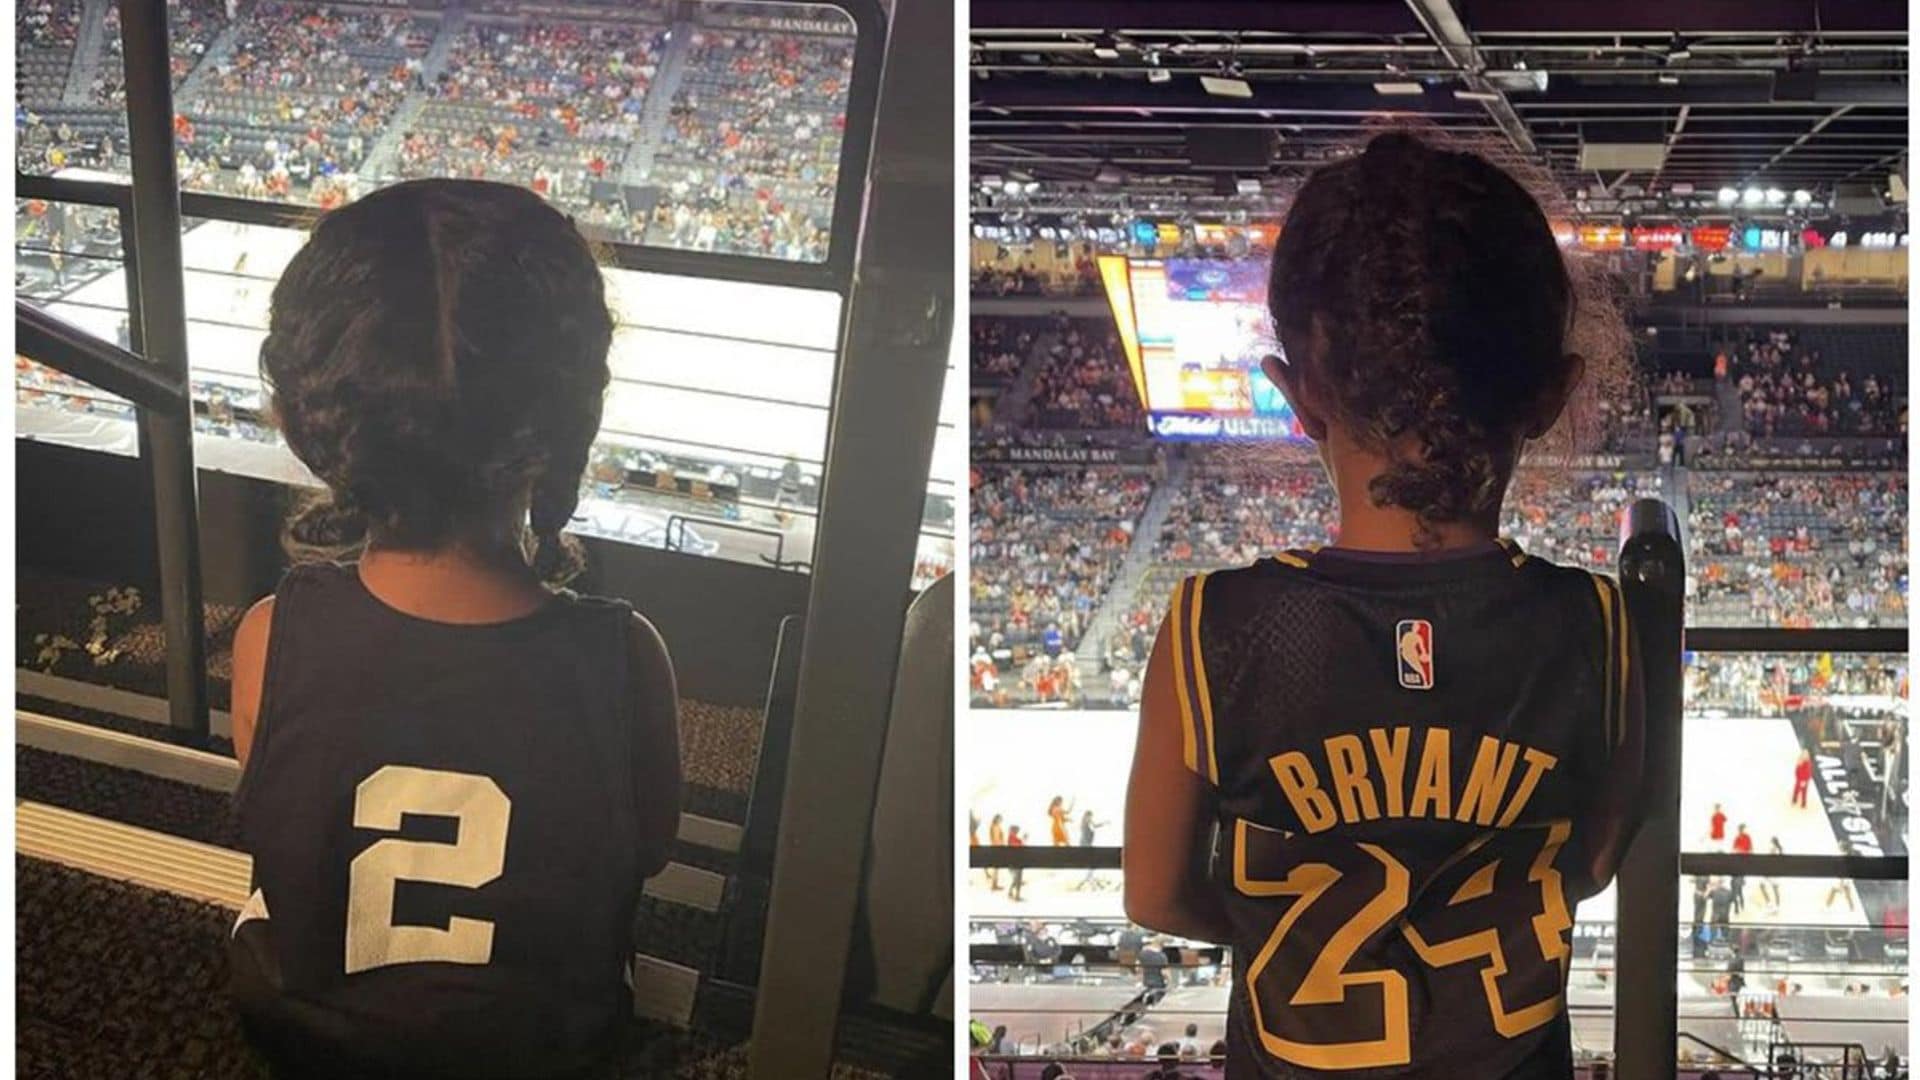 Vanessa Bryant's daughters Bianka and Capri wear jerseys honoring Kobe and Gianna